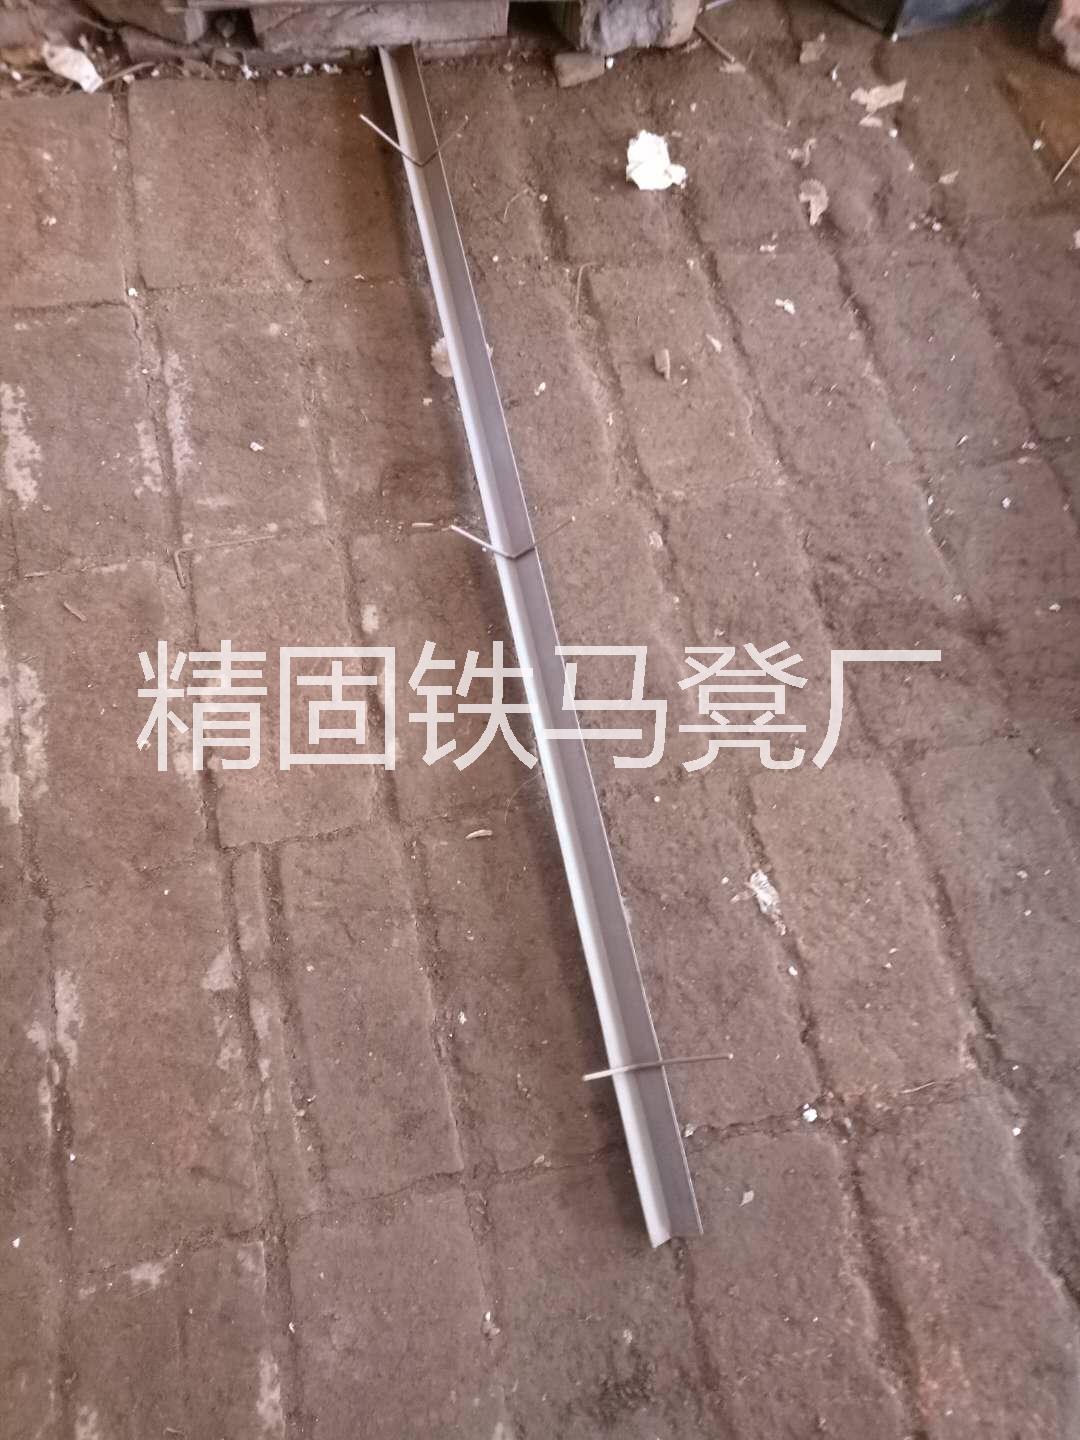 铁马凳正确使用方法 河北铁马凳销售 北京铁马凳工厂 北京低价铁马凳